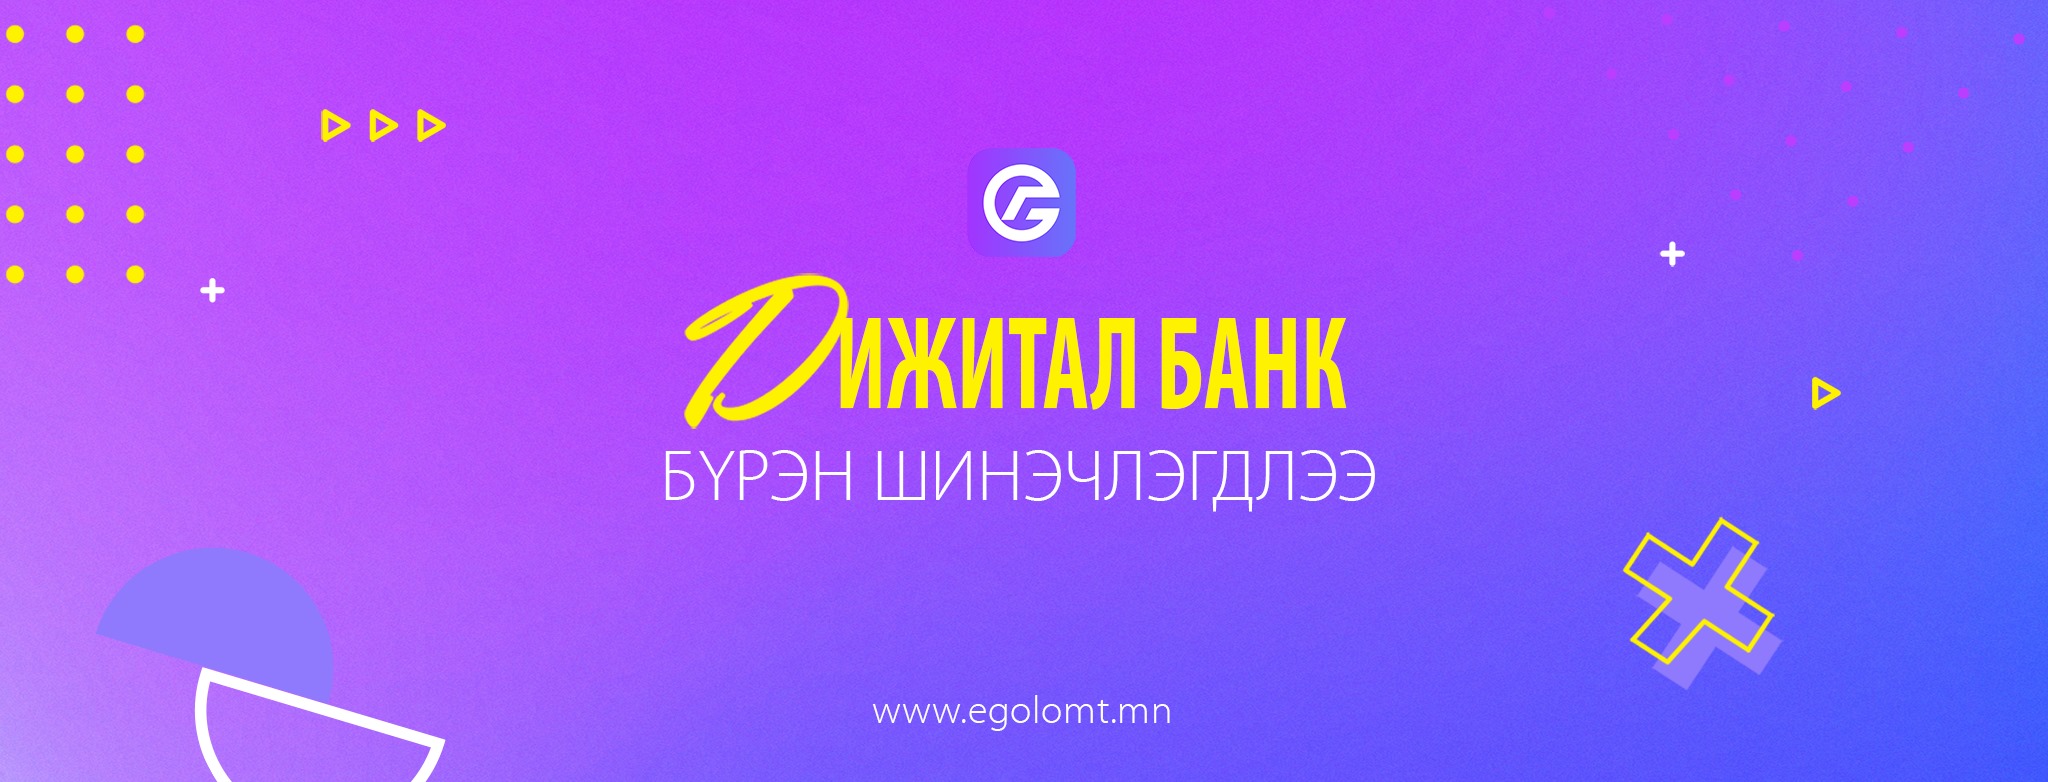  Golomt Bank (Голомт банк)